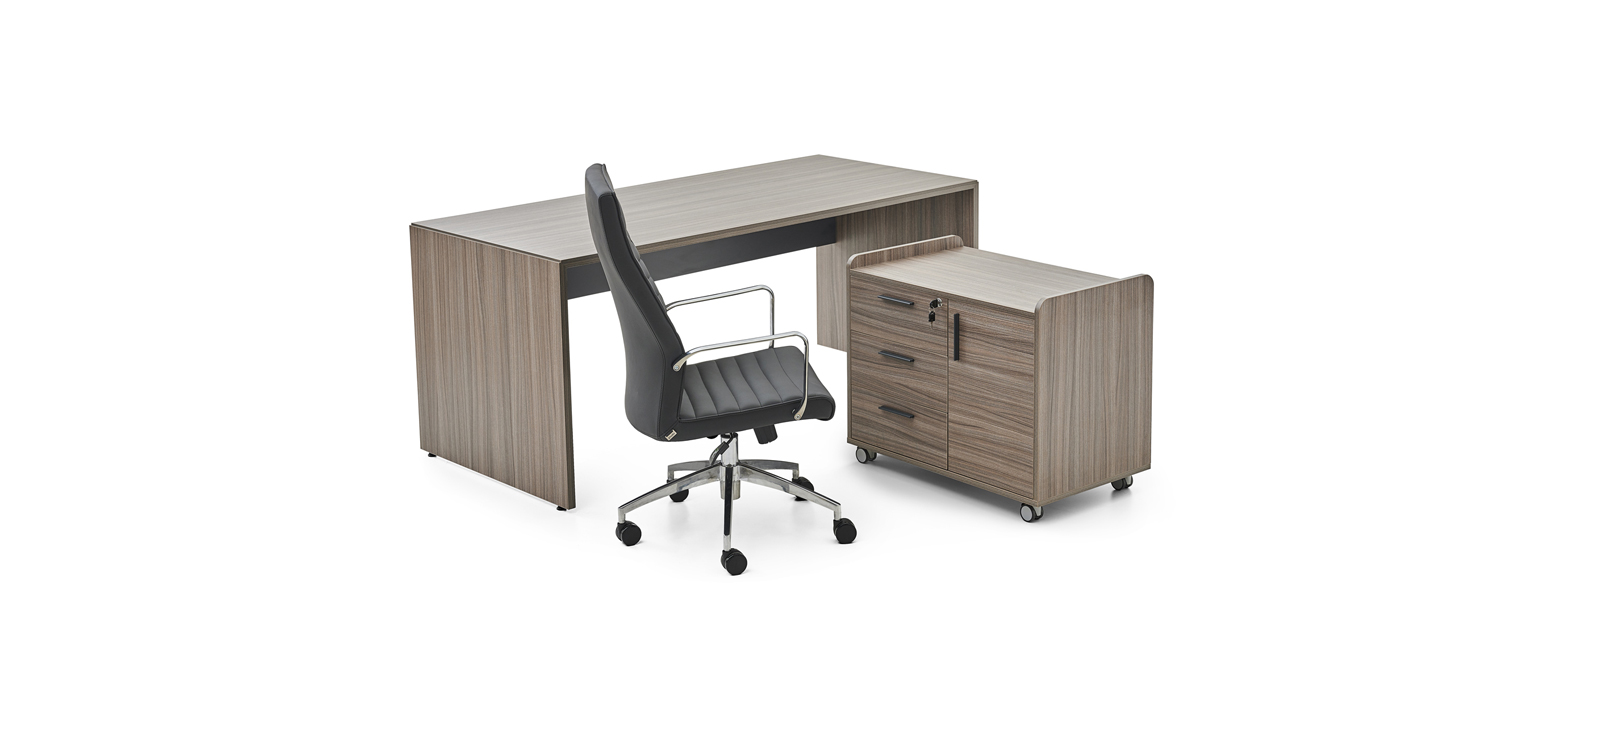 Bold - Executive Desk